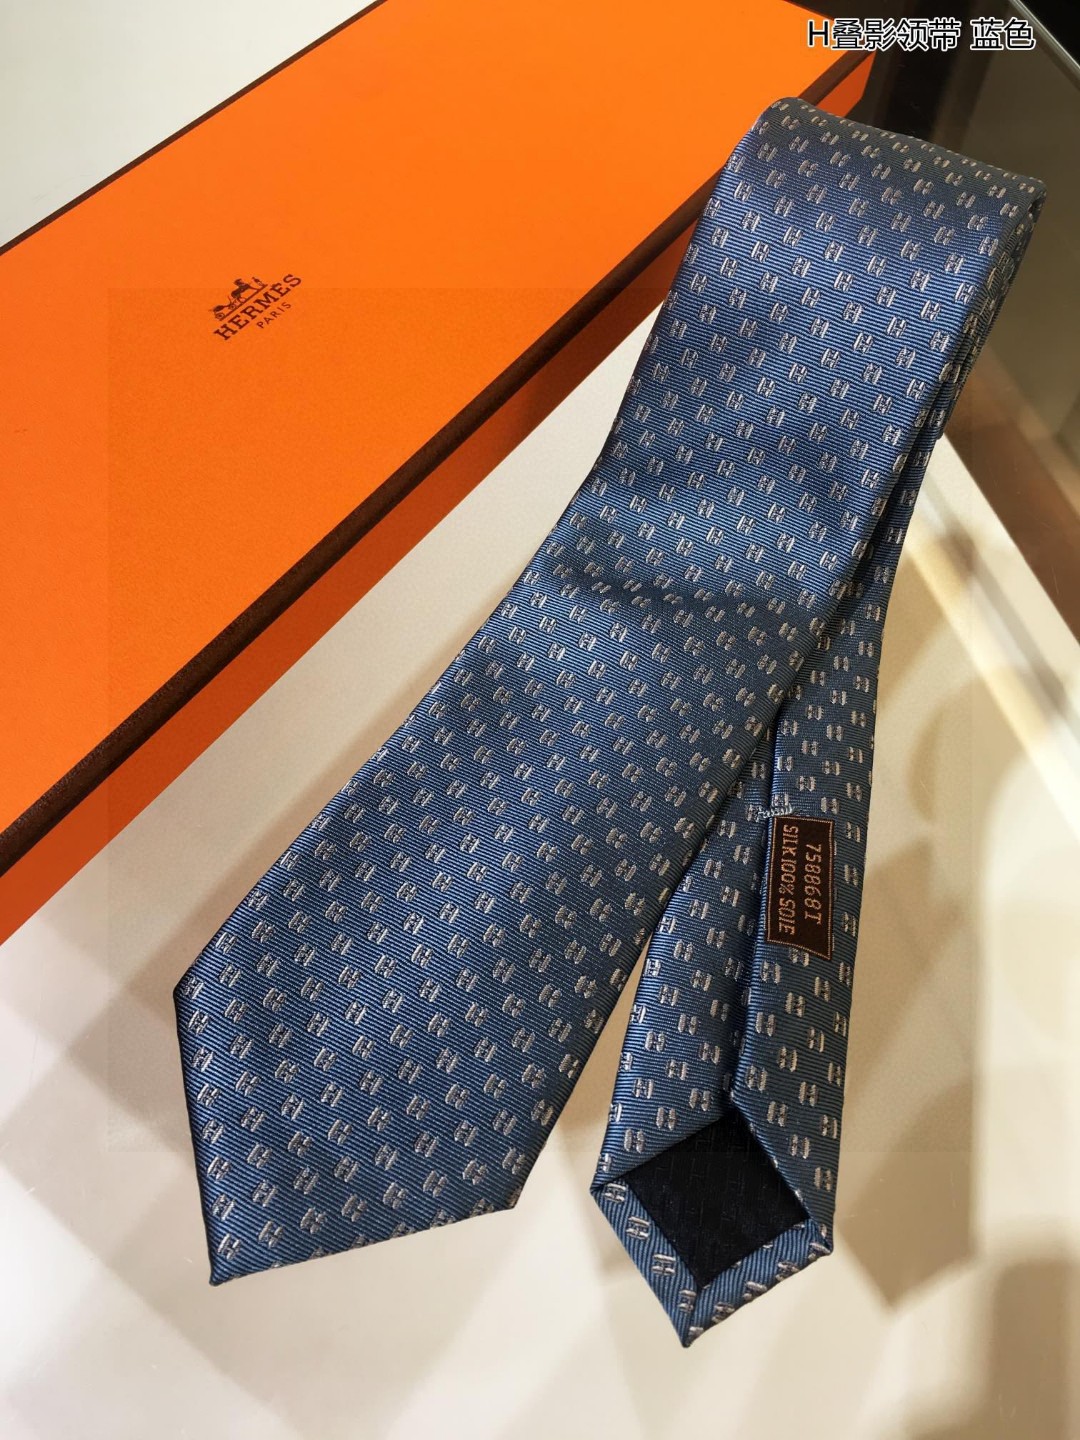 男士新款领带系列H叠影领带稀有H家每